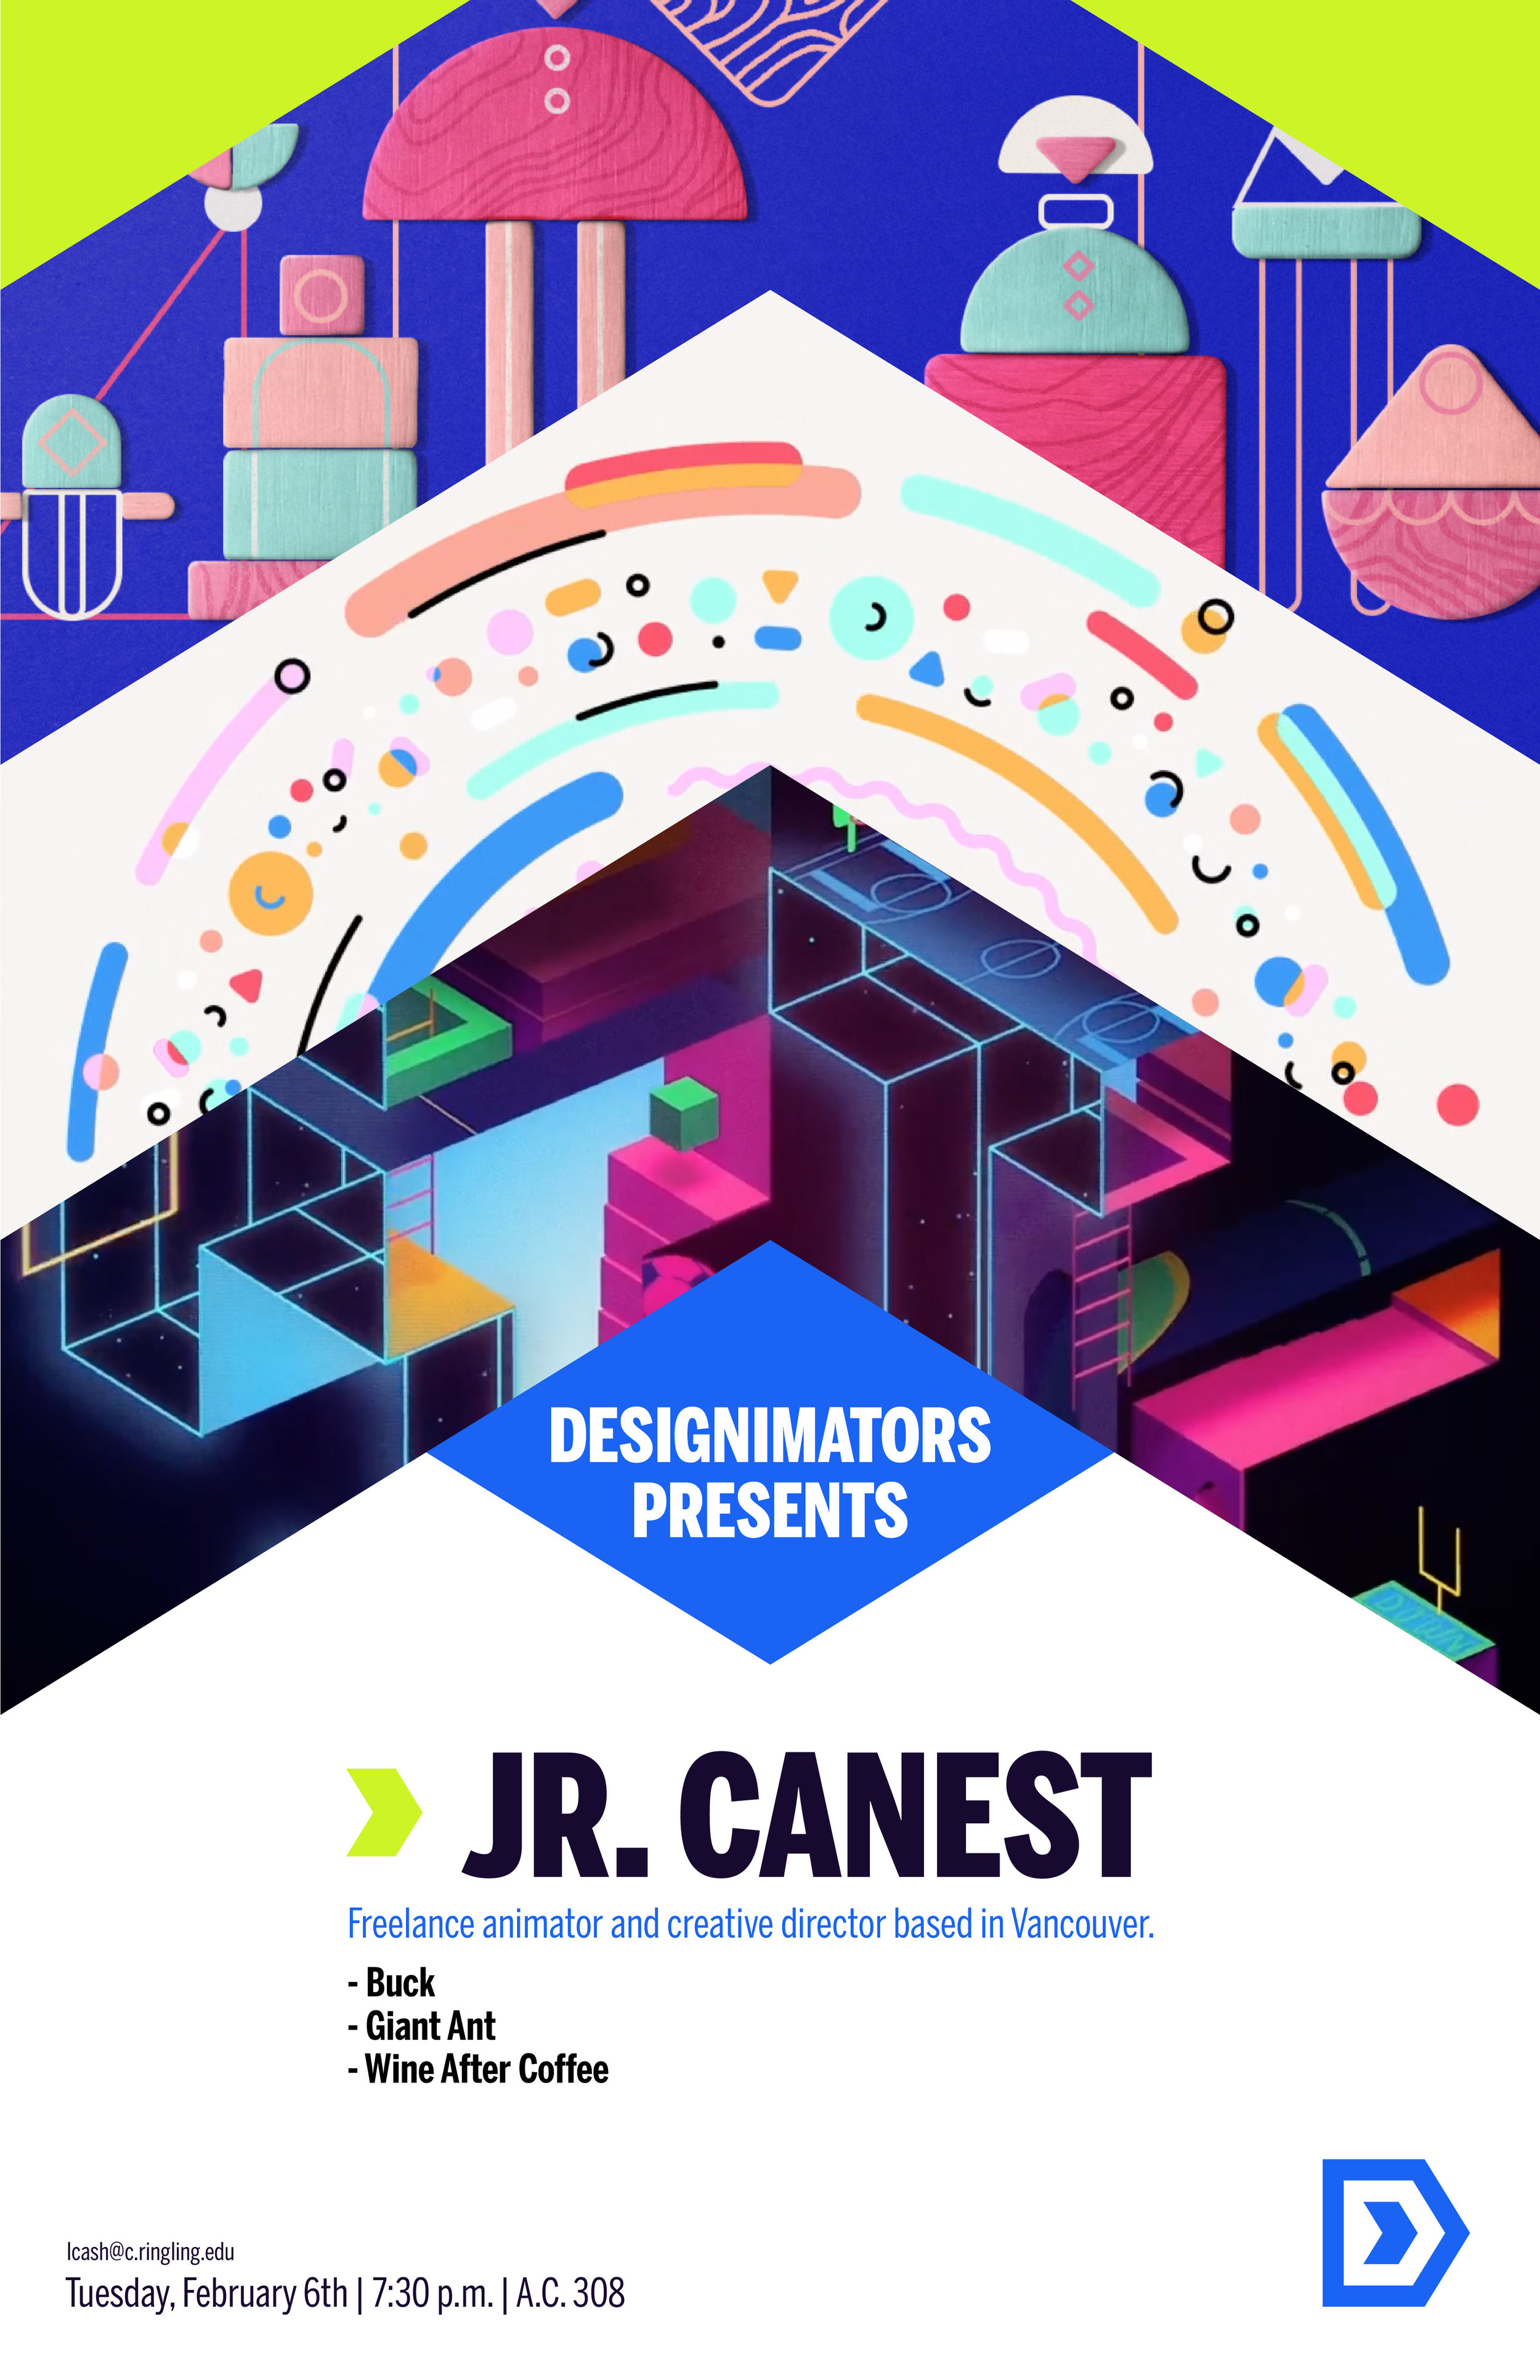 Designimators_Poster_JR.Canest_v01-01.jpg